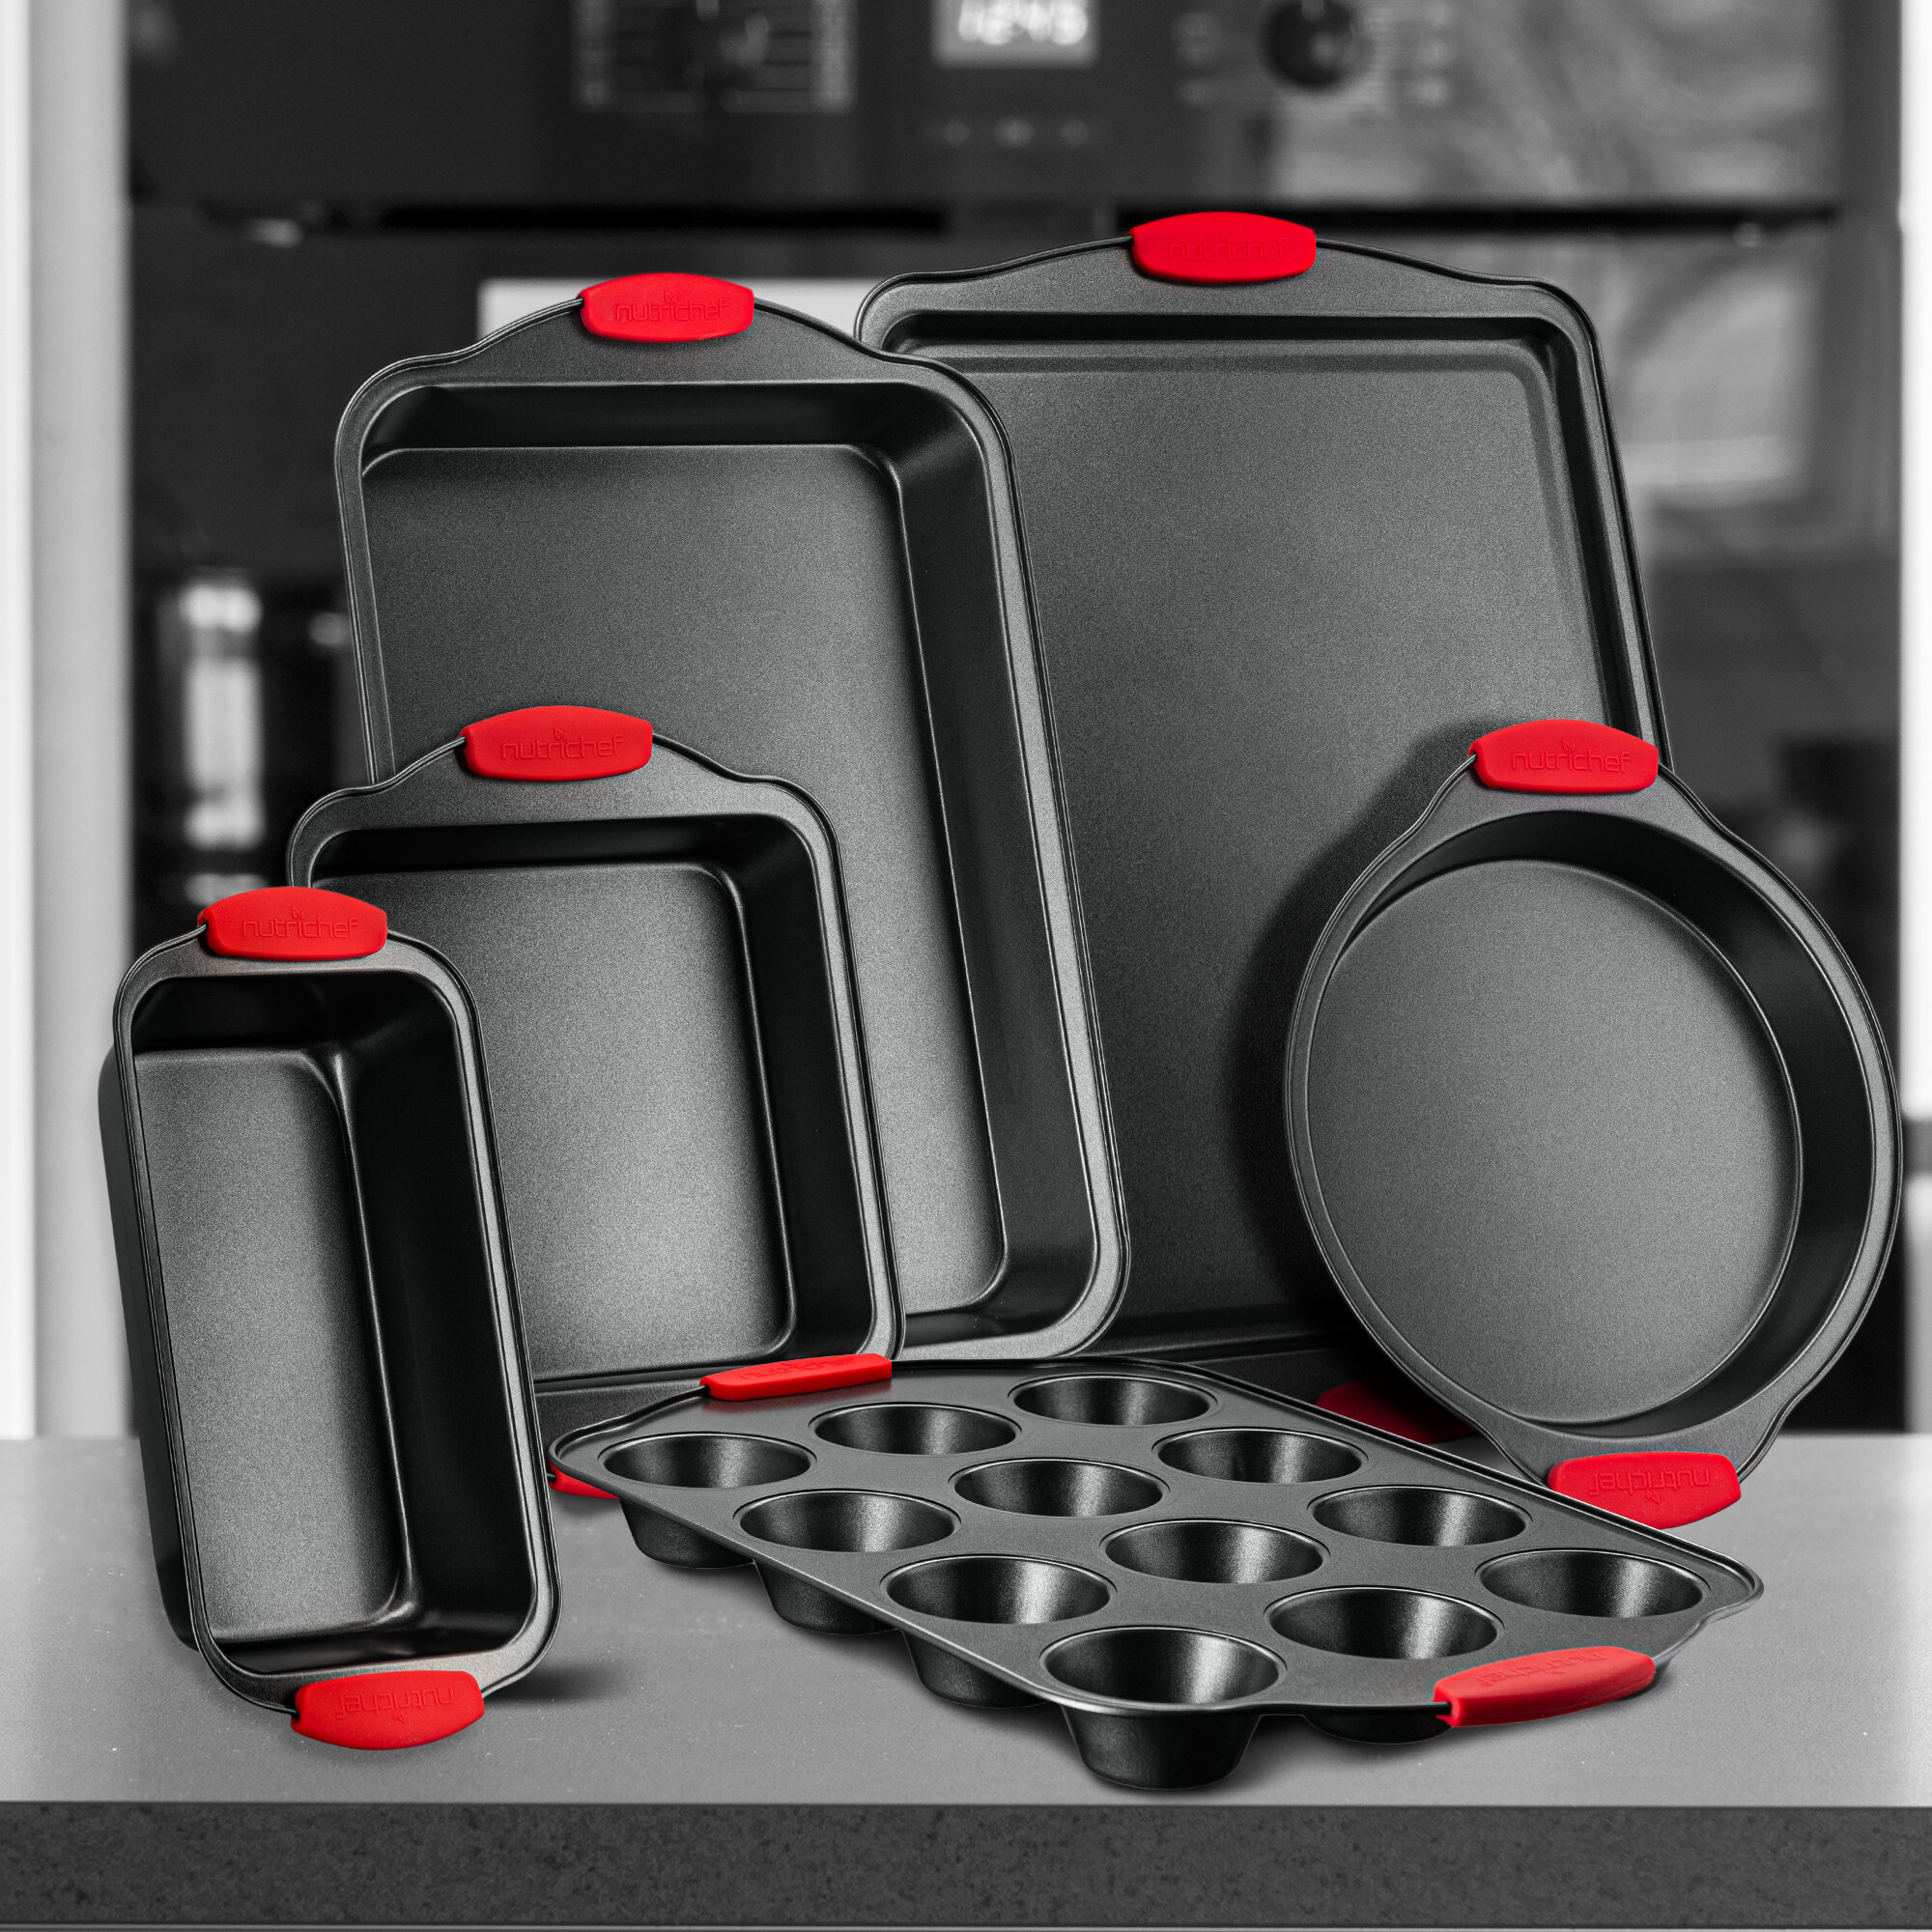 NutriChef 8 Piece Carbon Steel Non-stick Kitchen Oven Bakeware Set